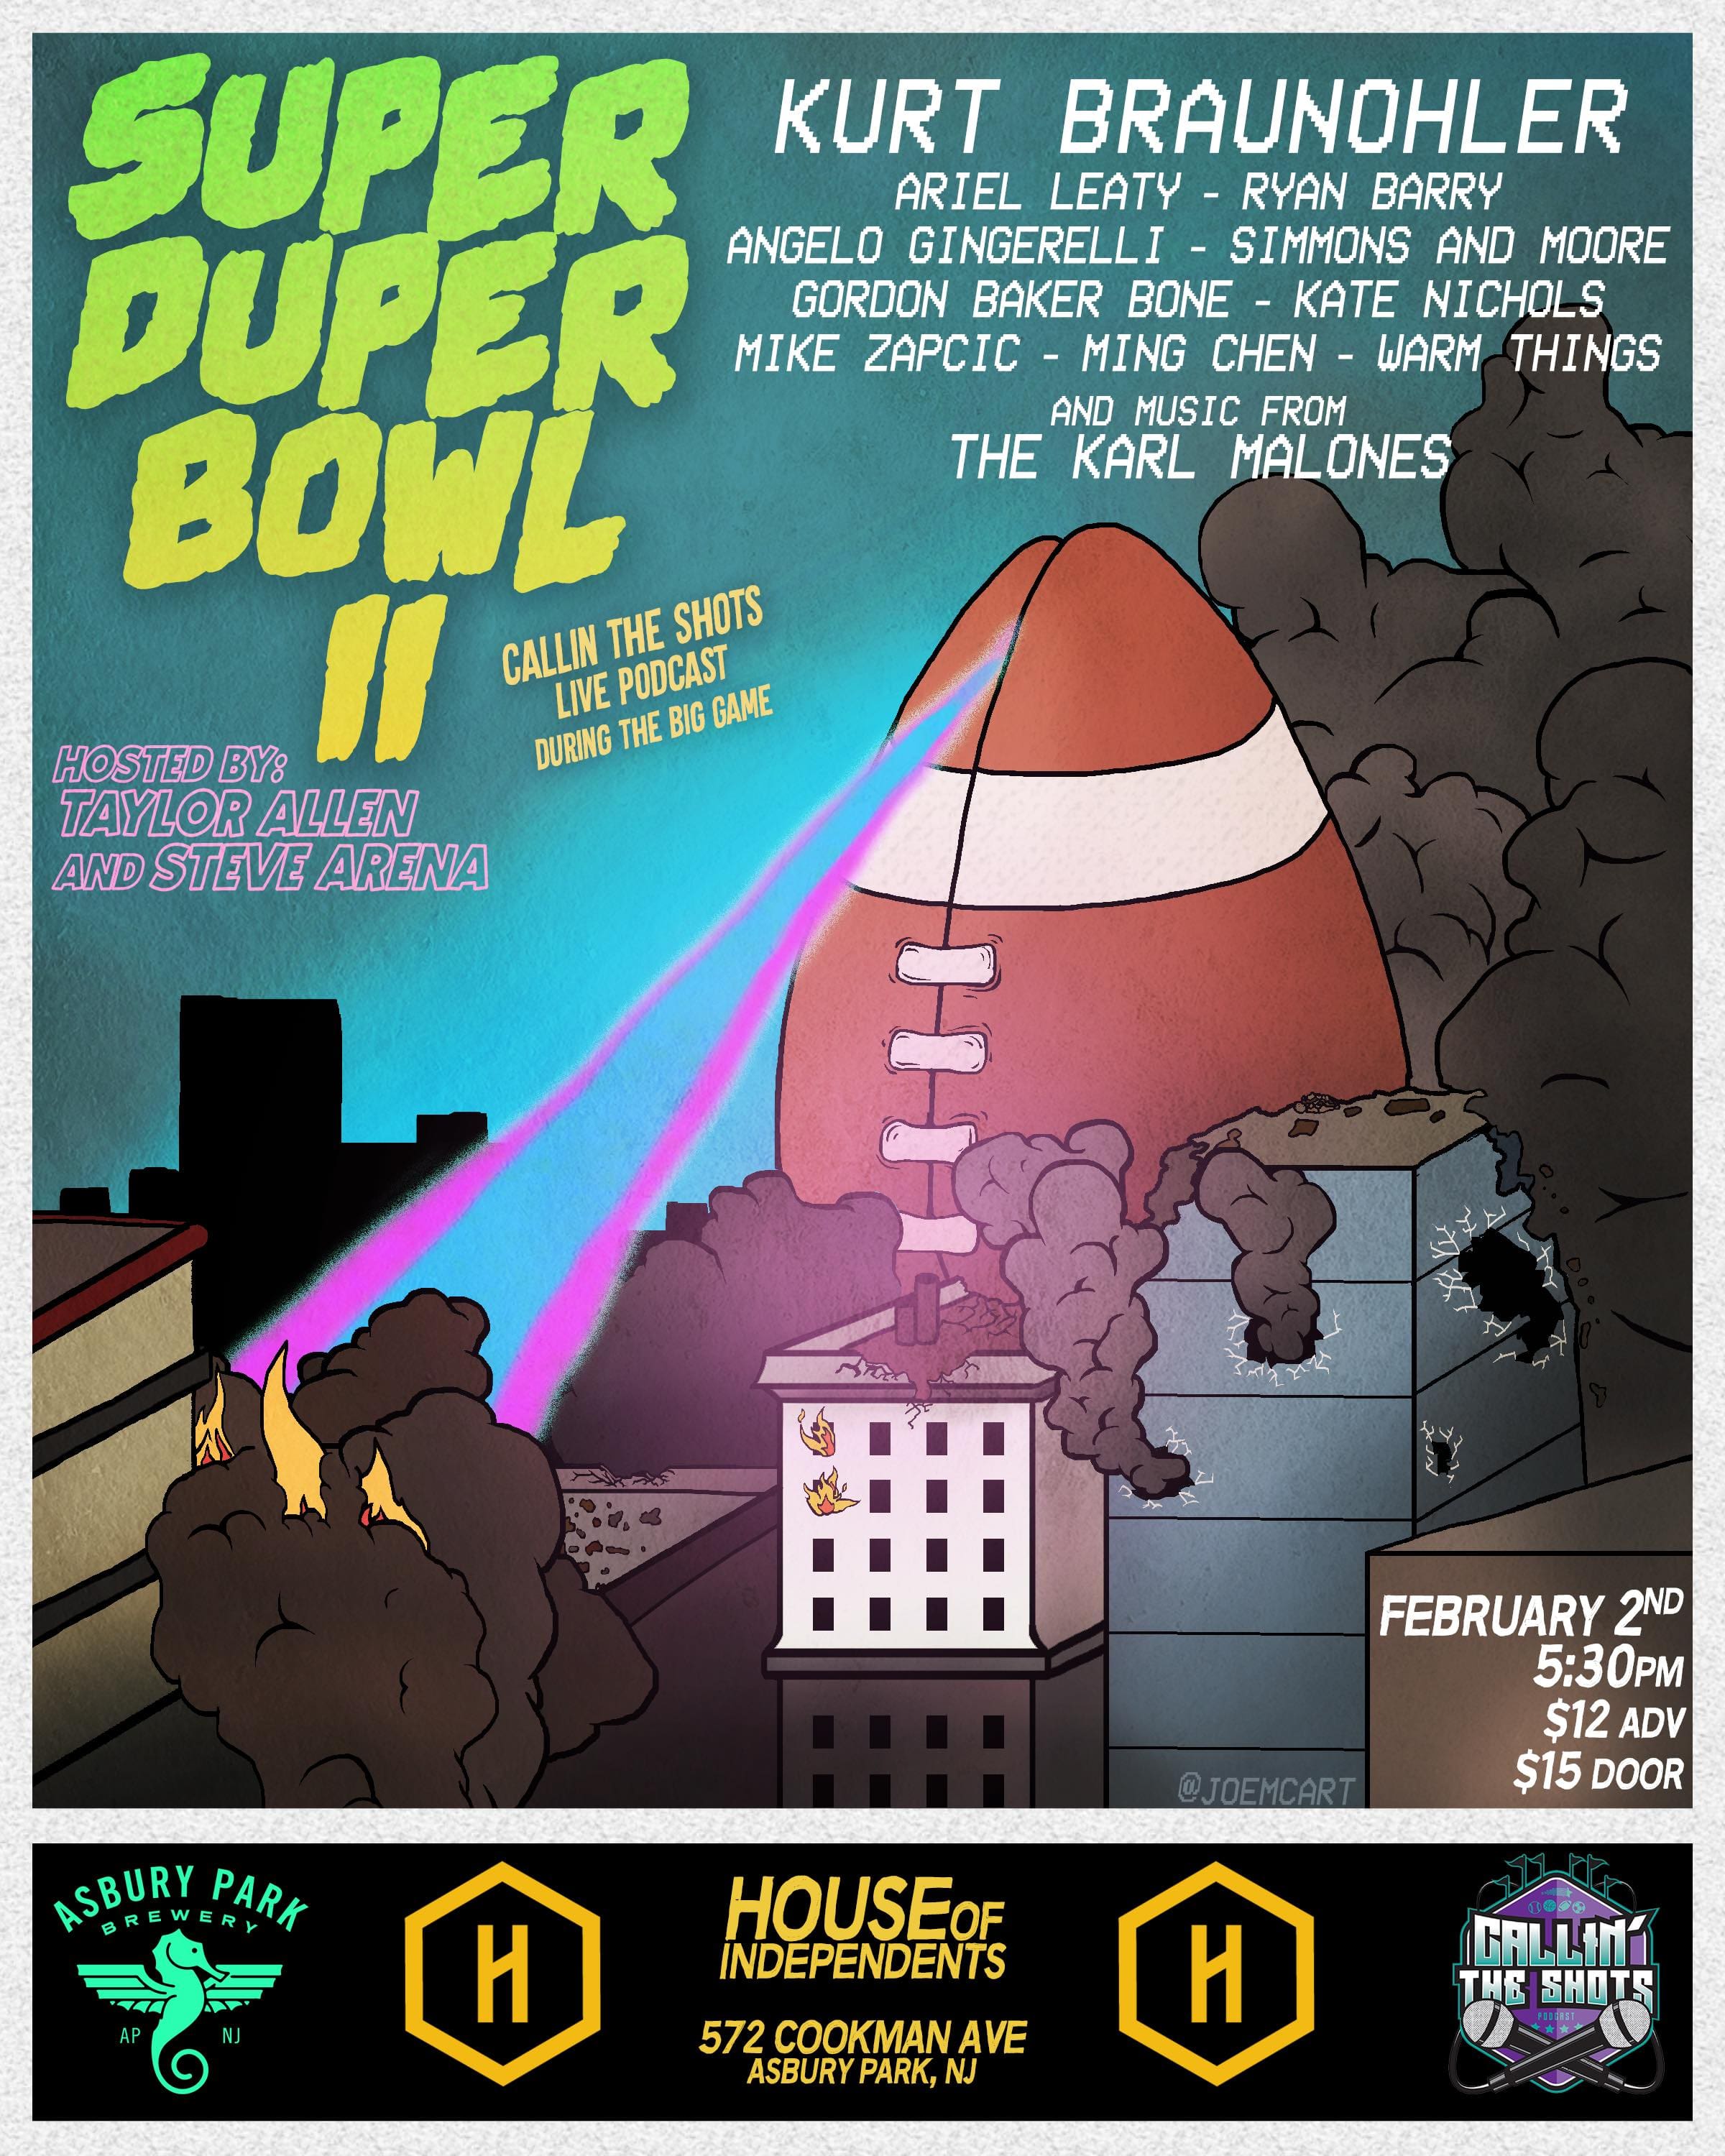 Super Duper Bowl II